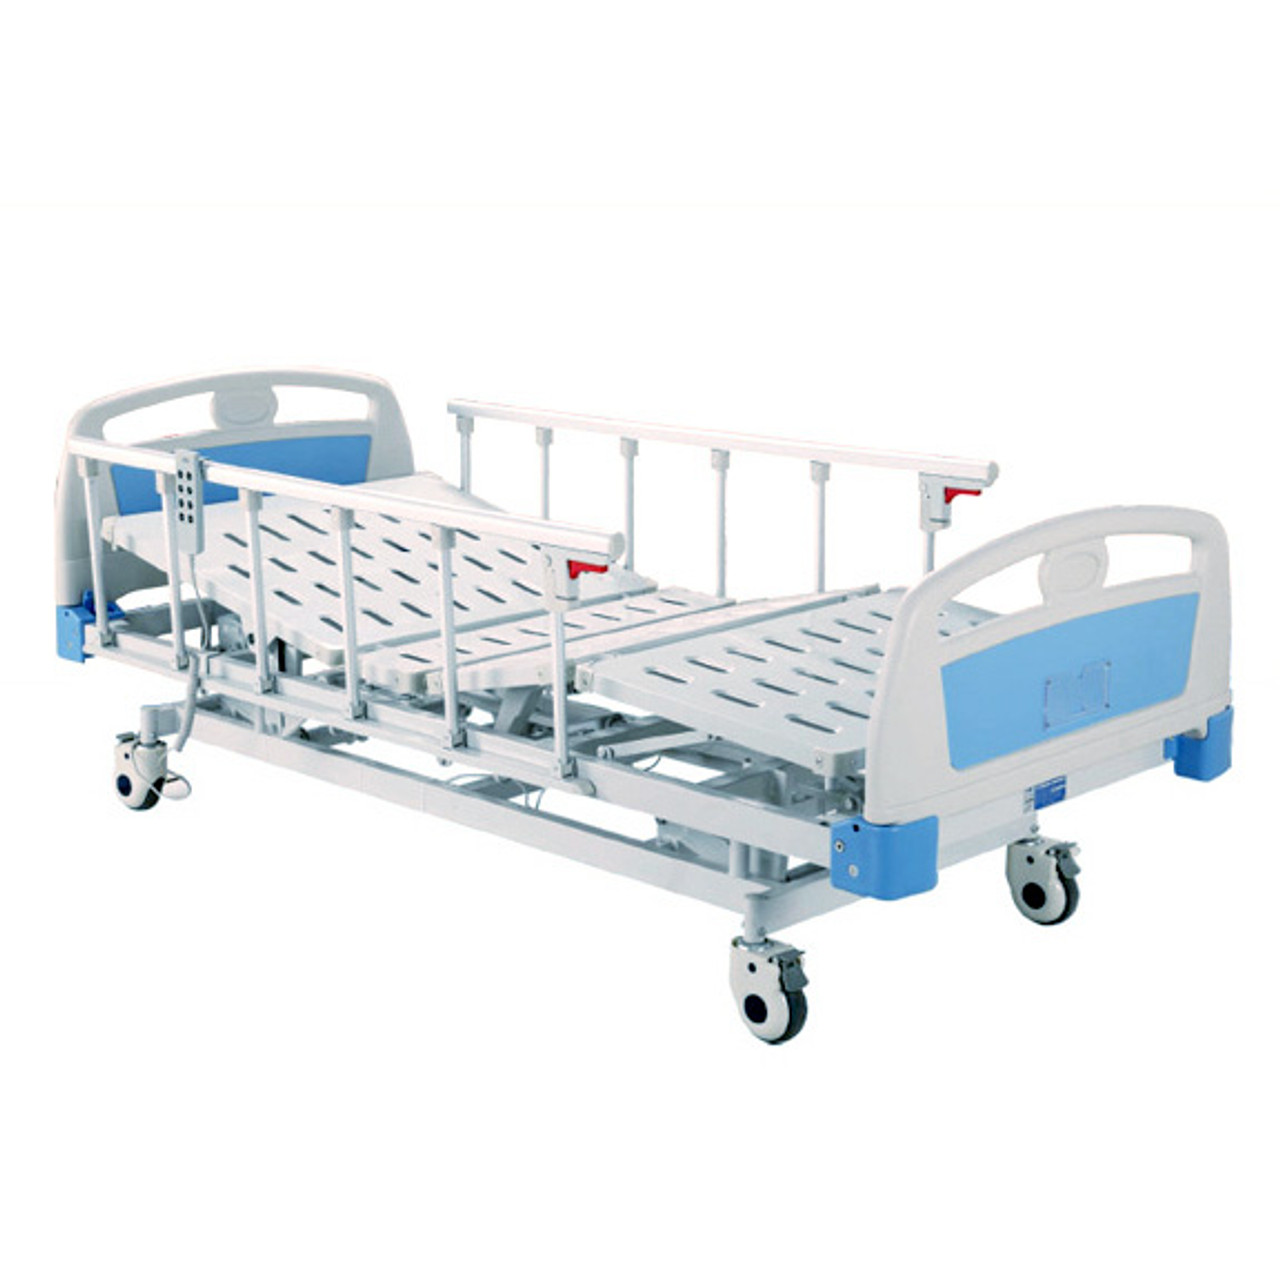 Medline Alterra 1385 Hi-Low Hospital Bed